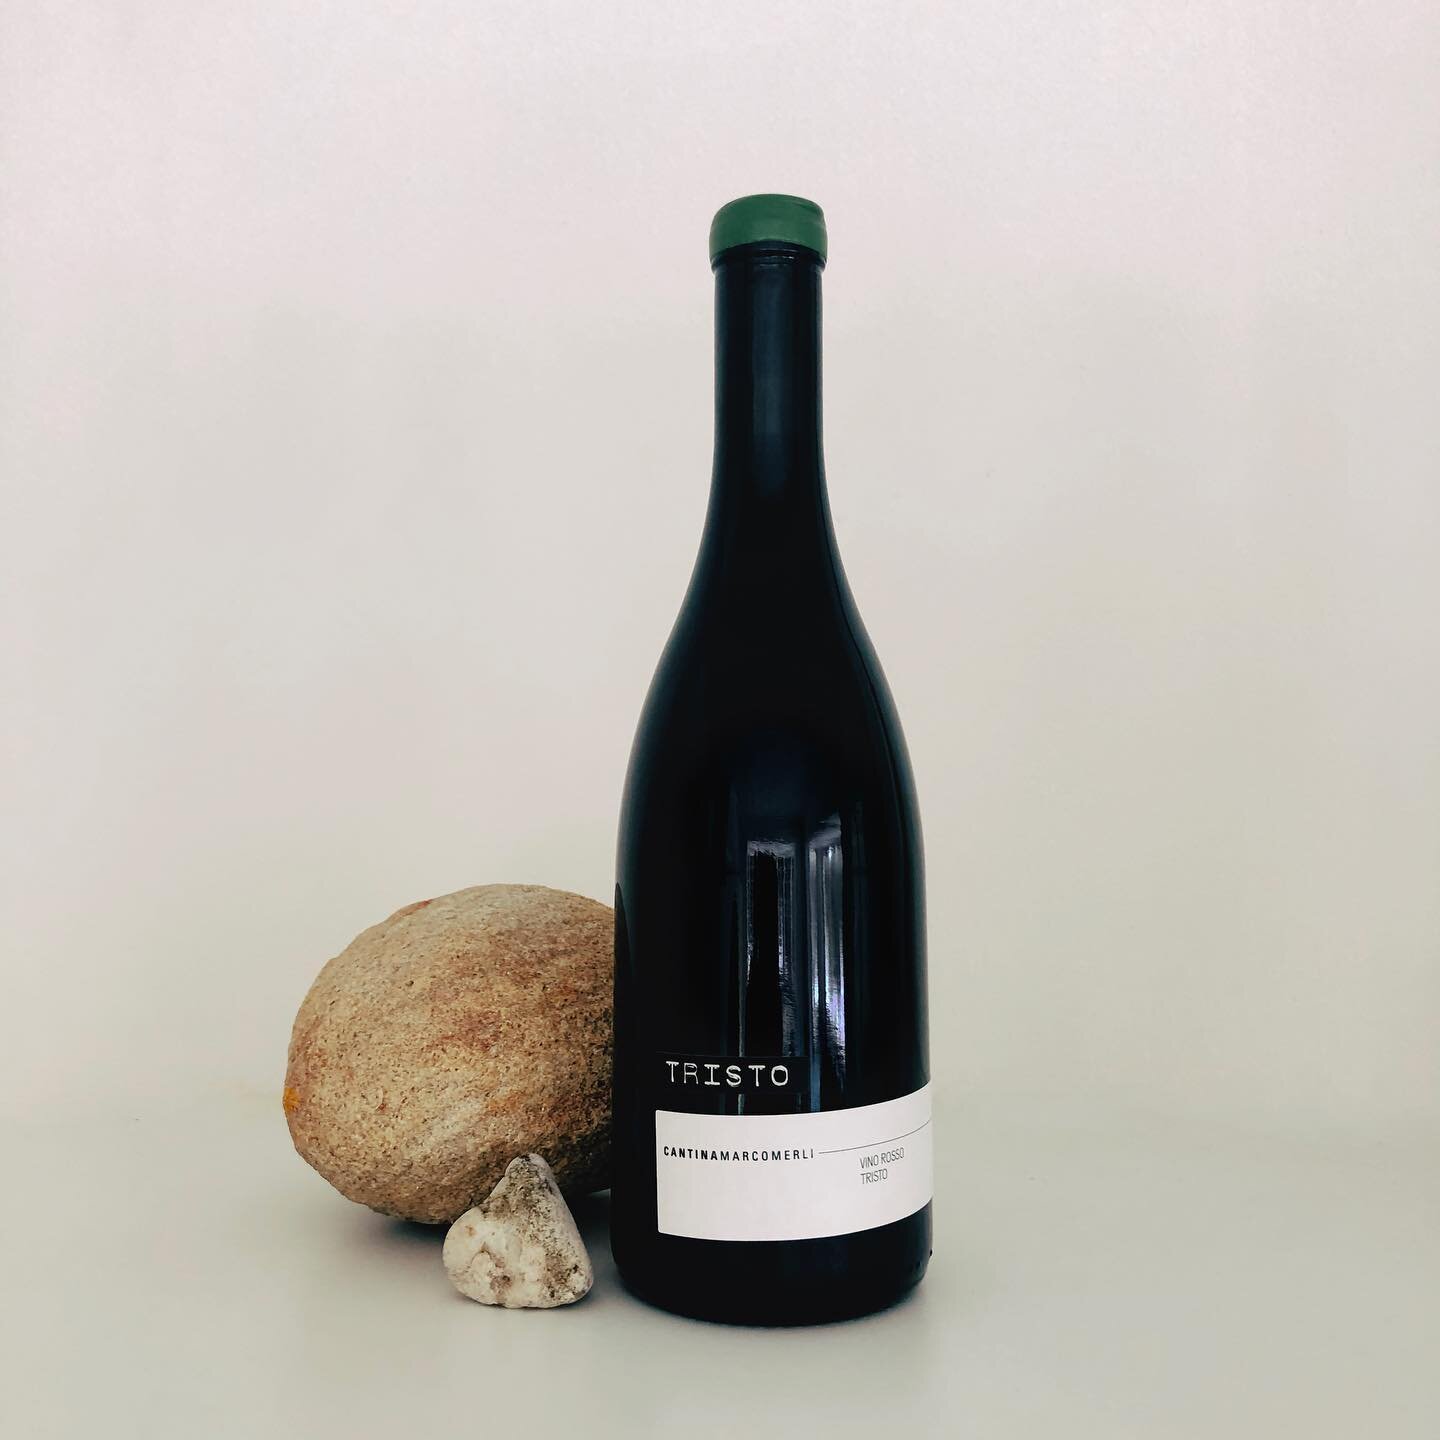 Ook nieuw in onze webshop. (Link in bio). @cantinamarcomerli Tristo Rosso

 Cantina Marco Merli kijkt ook over de landgrenzen om idee&euml;n op te doen en dat leidt ondermeer tot deze leuke originele en karaktervolle wijn. Een plezierige dorstlesser 